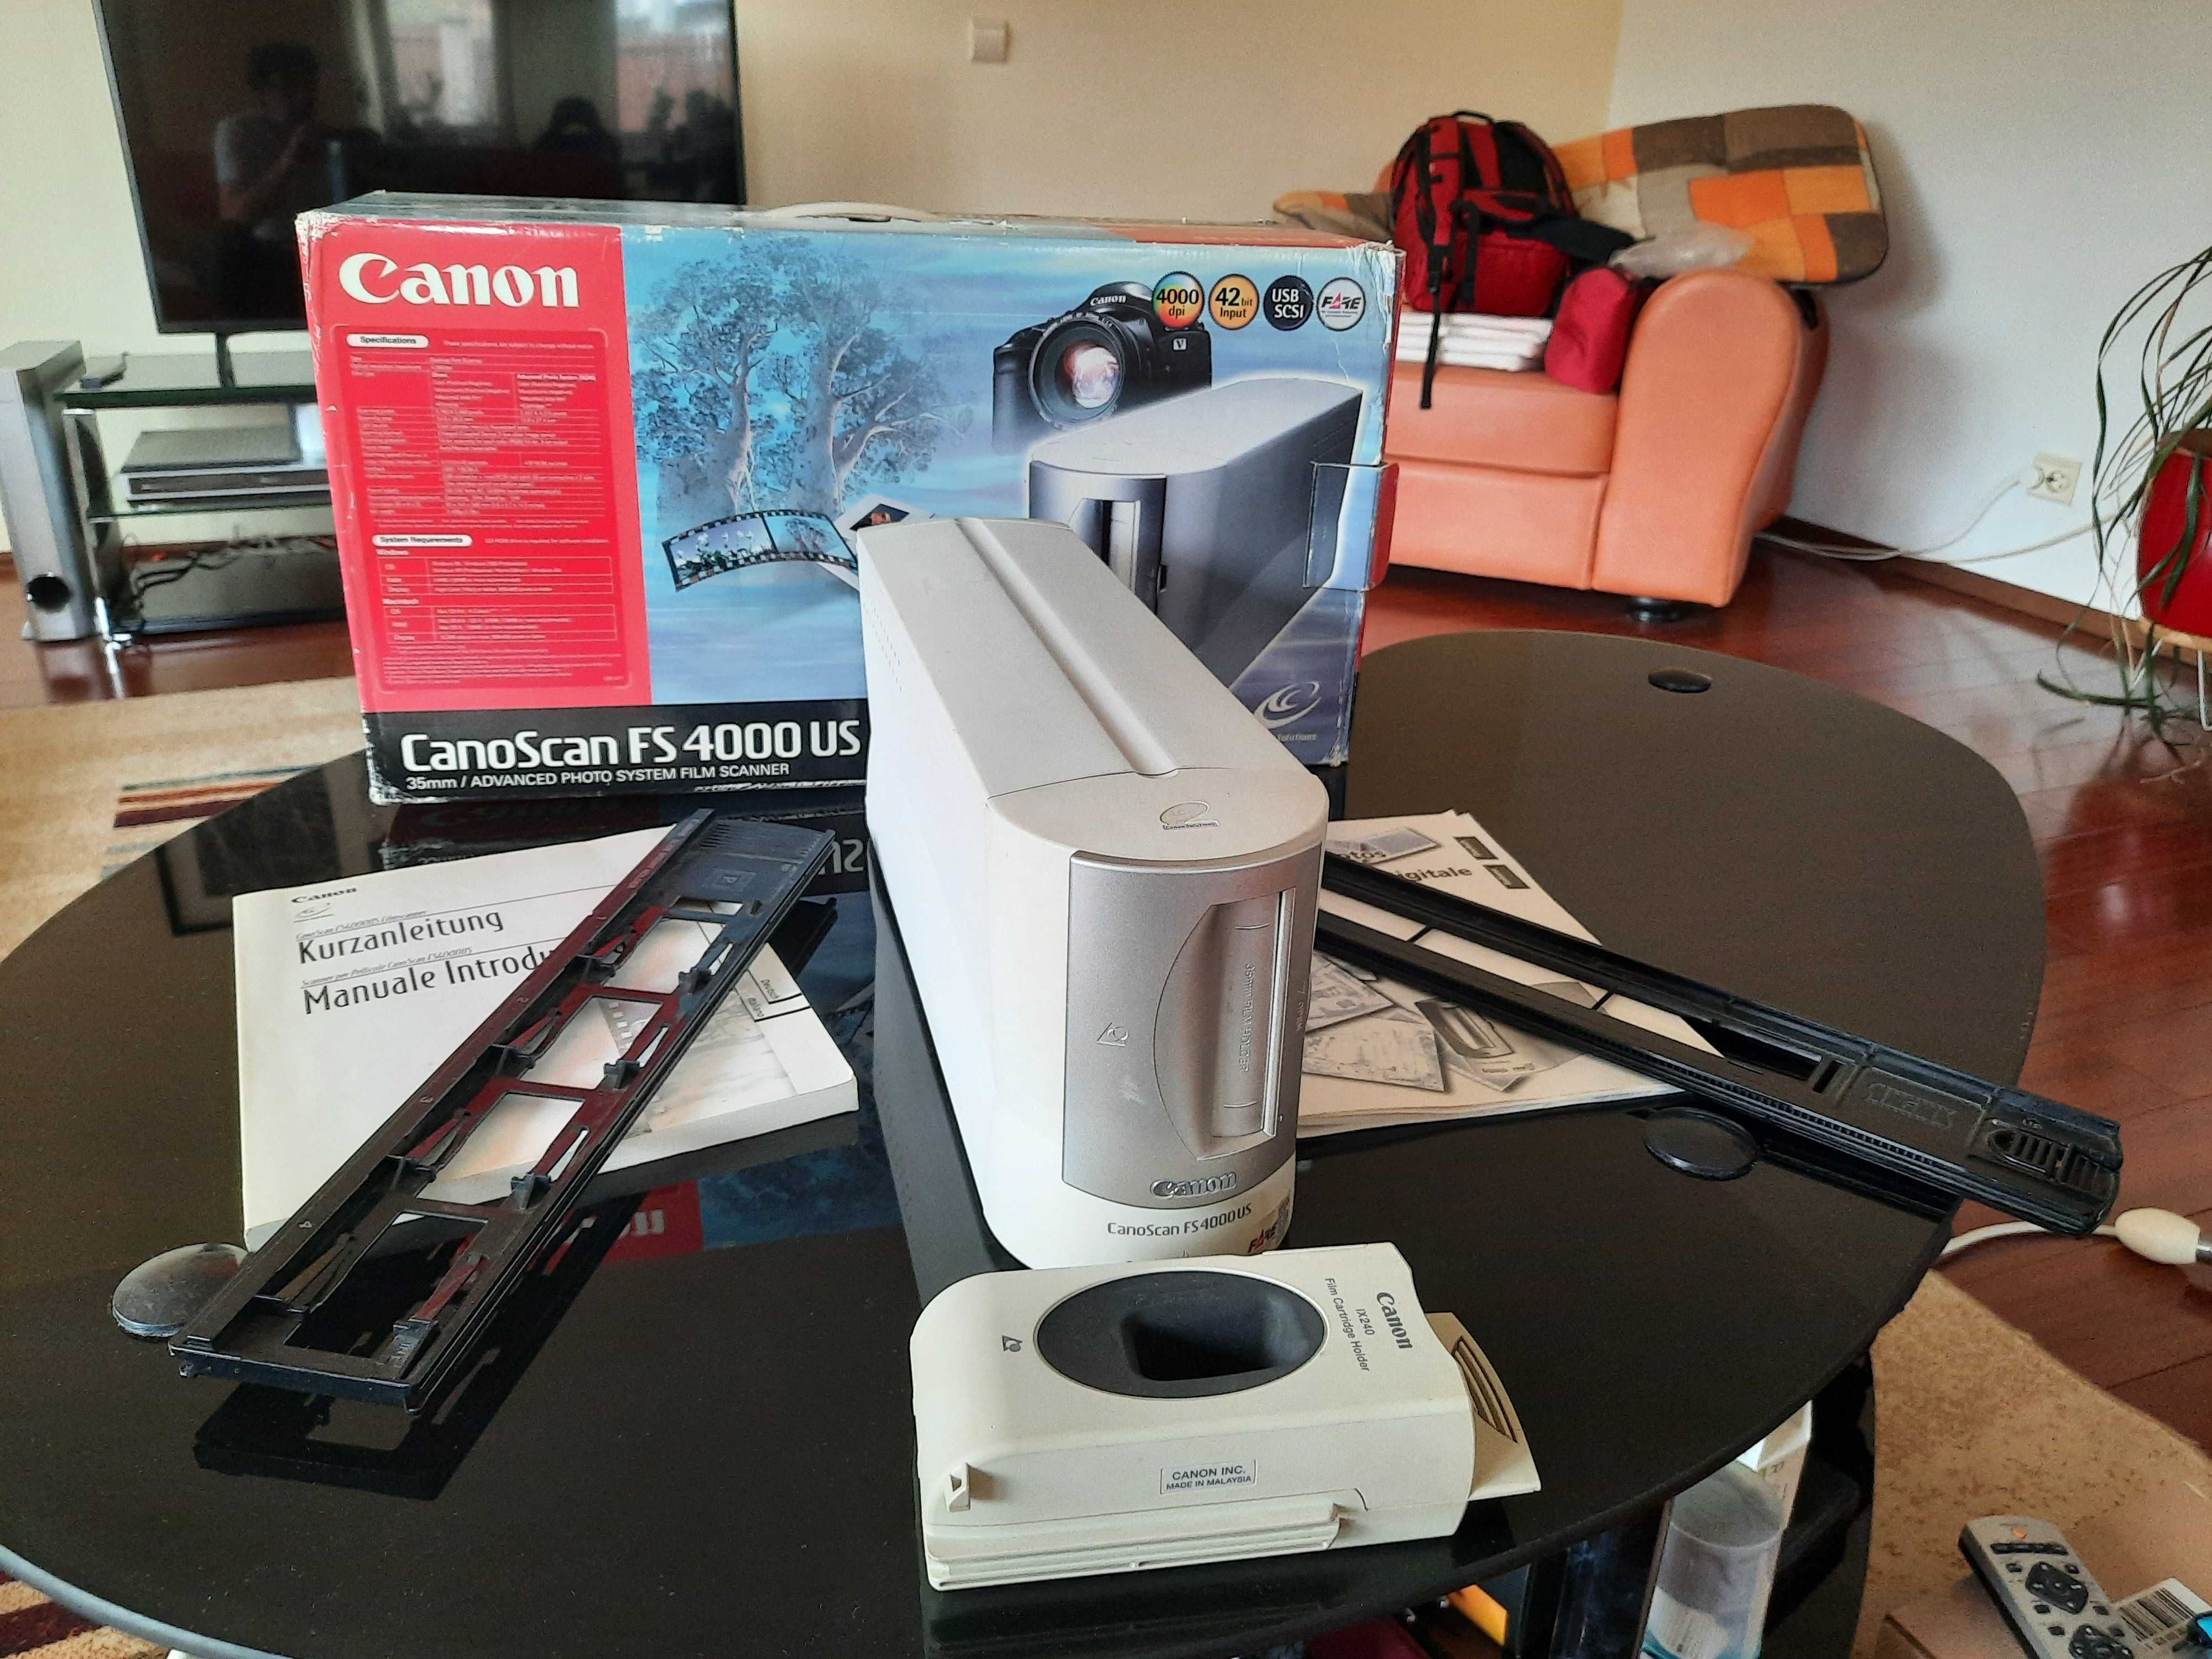 Scanner film si diapozitive Canon FS4000US cu toate accesoriile